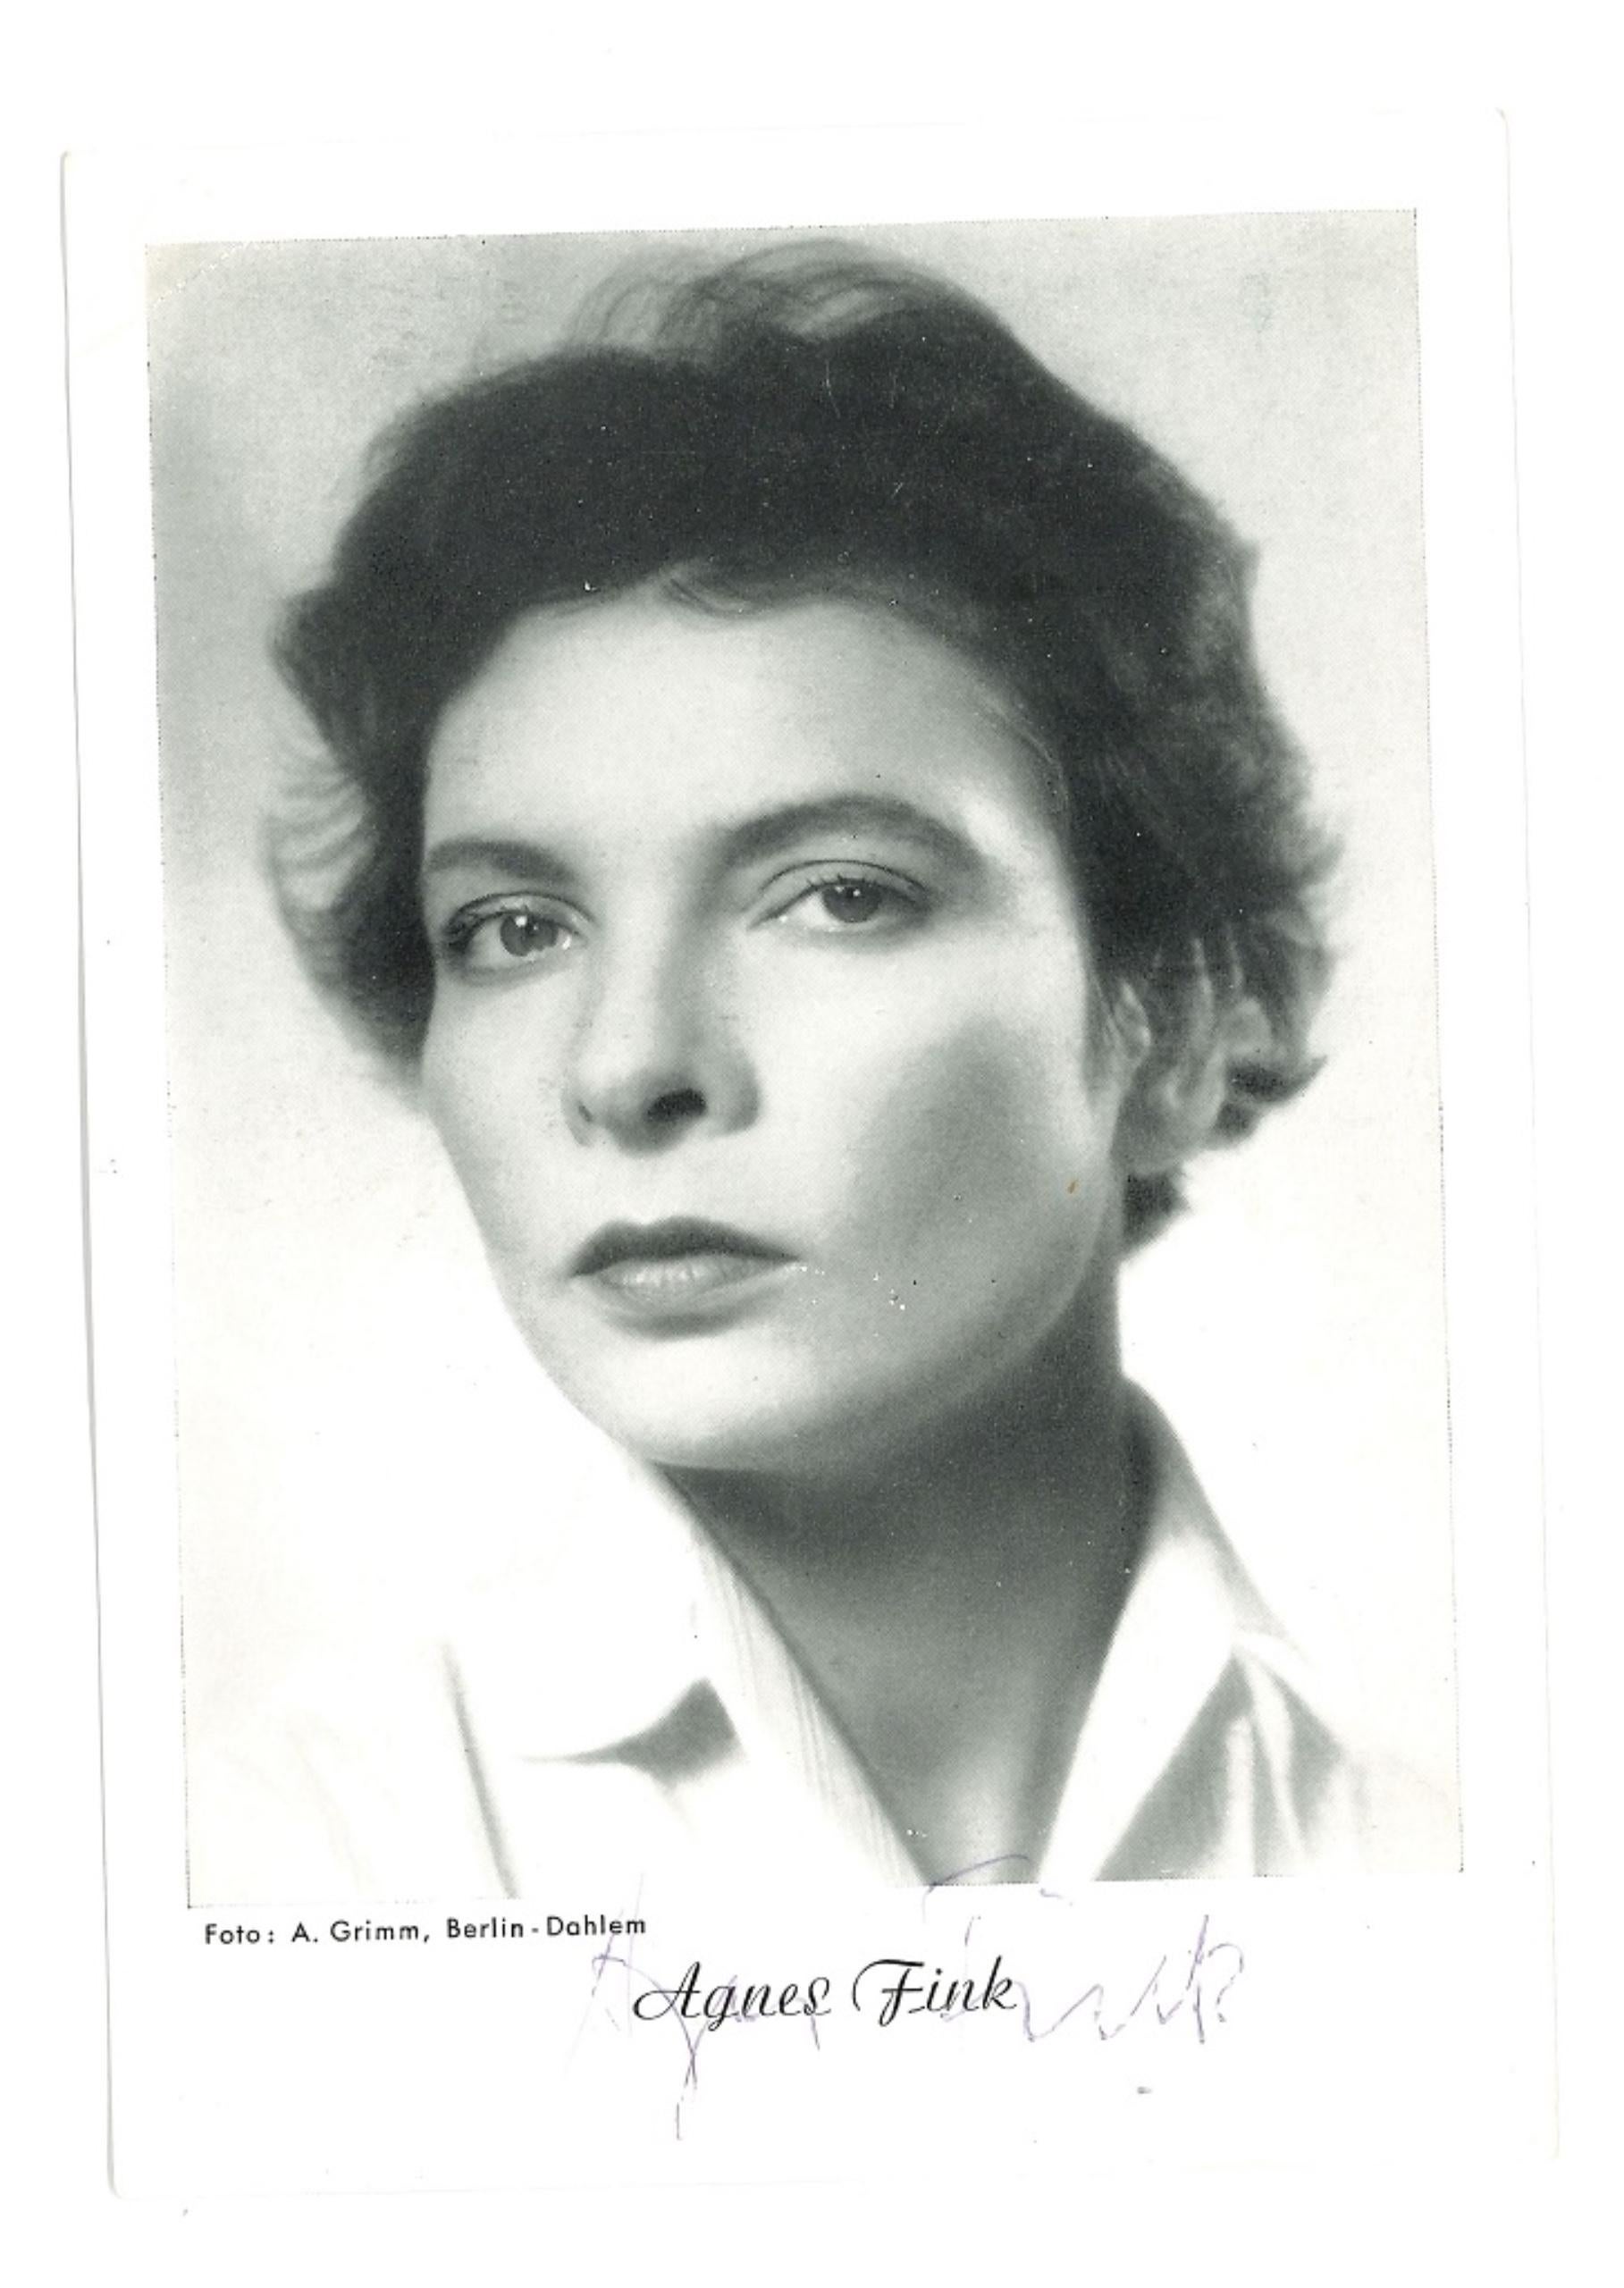 Unknown Portrait Photograph - Autographed Portrait of Agnes Fink - Original b/w Postcard Portrait - 1950s